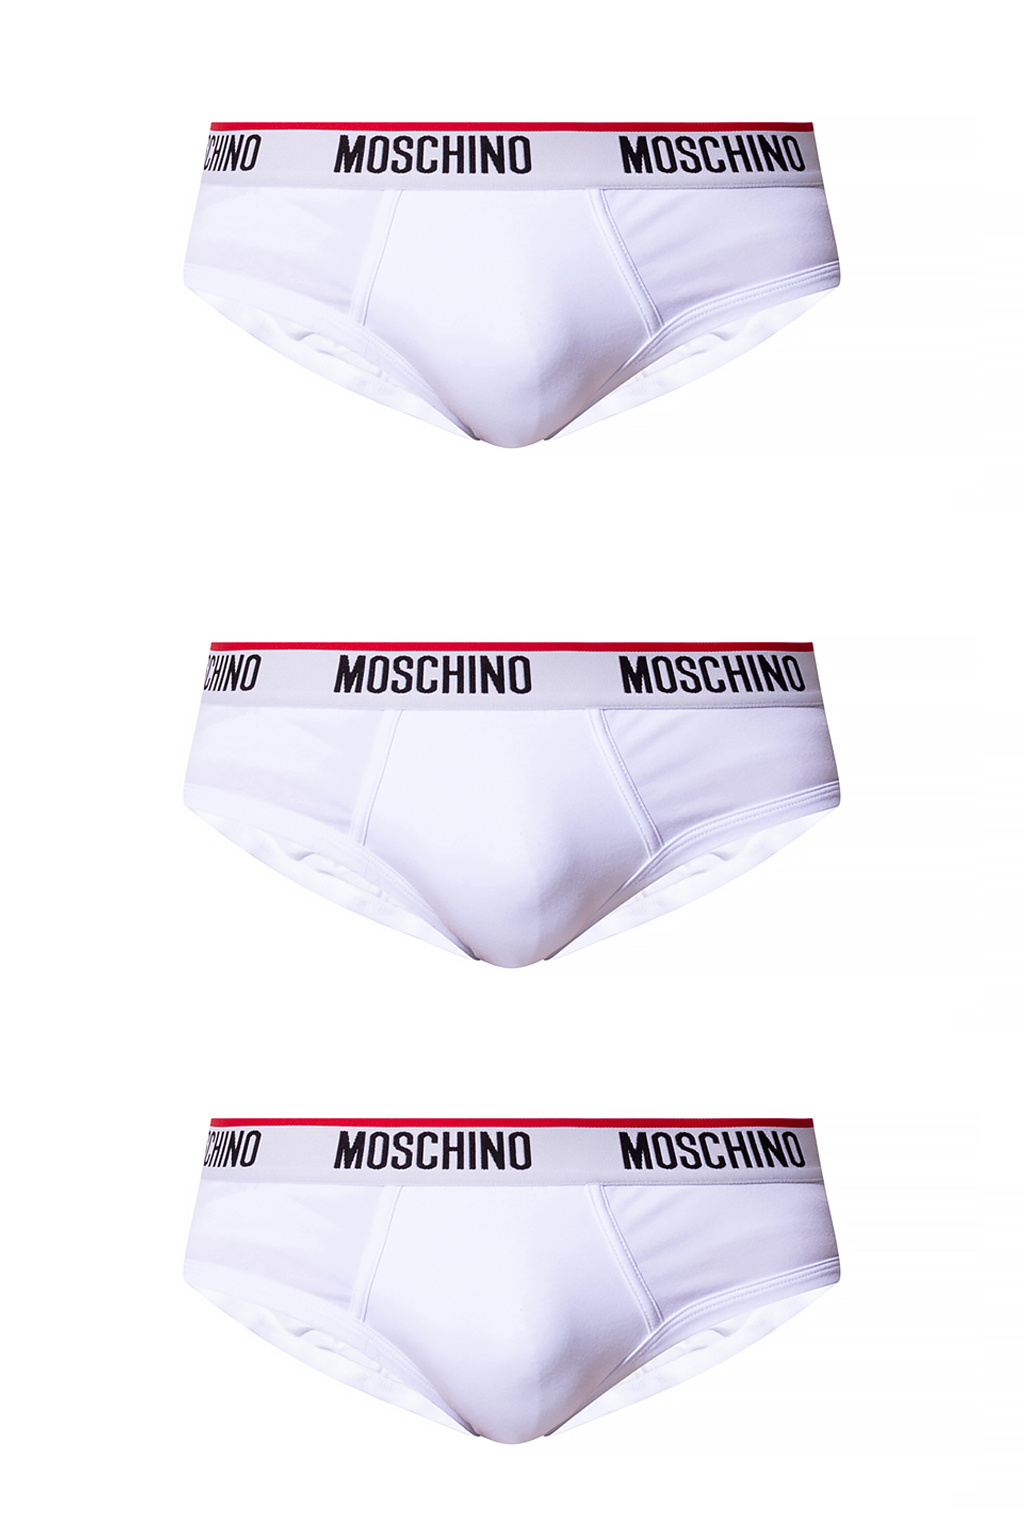 Moschino Underwear